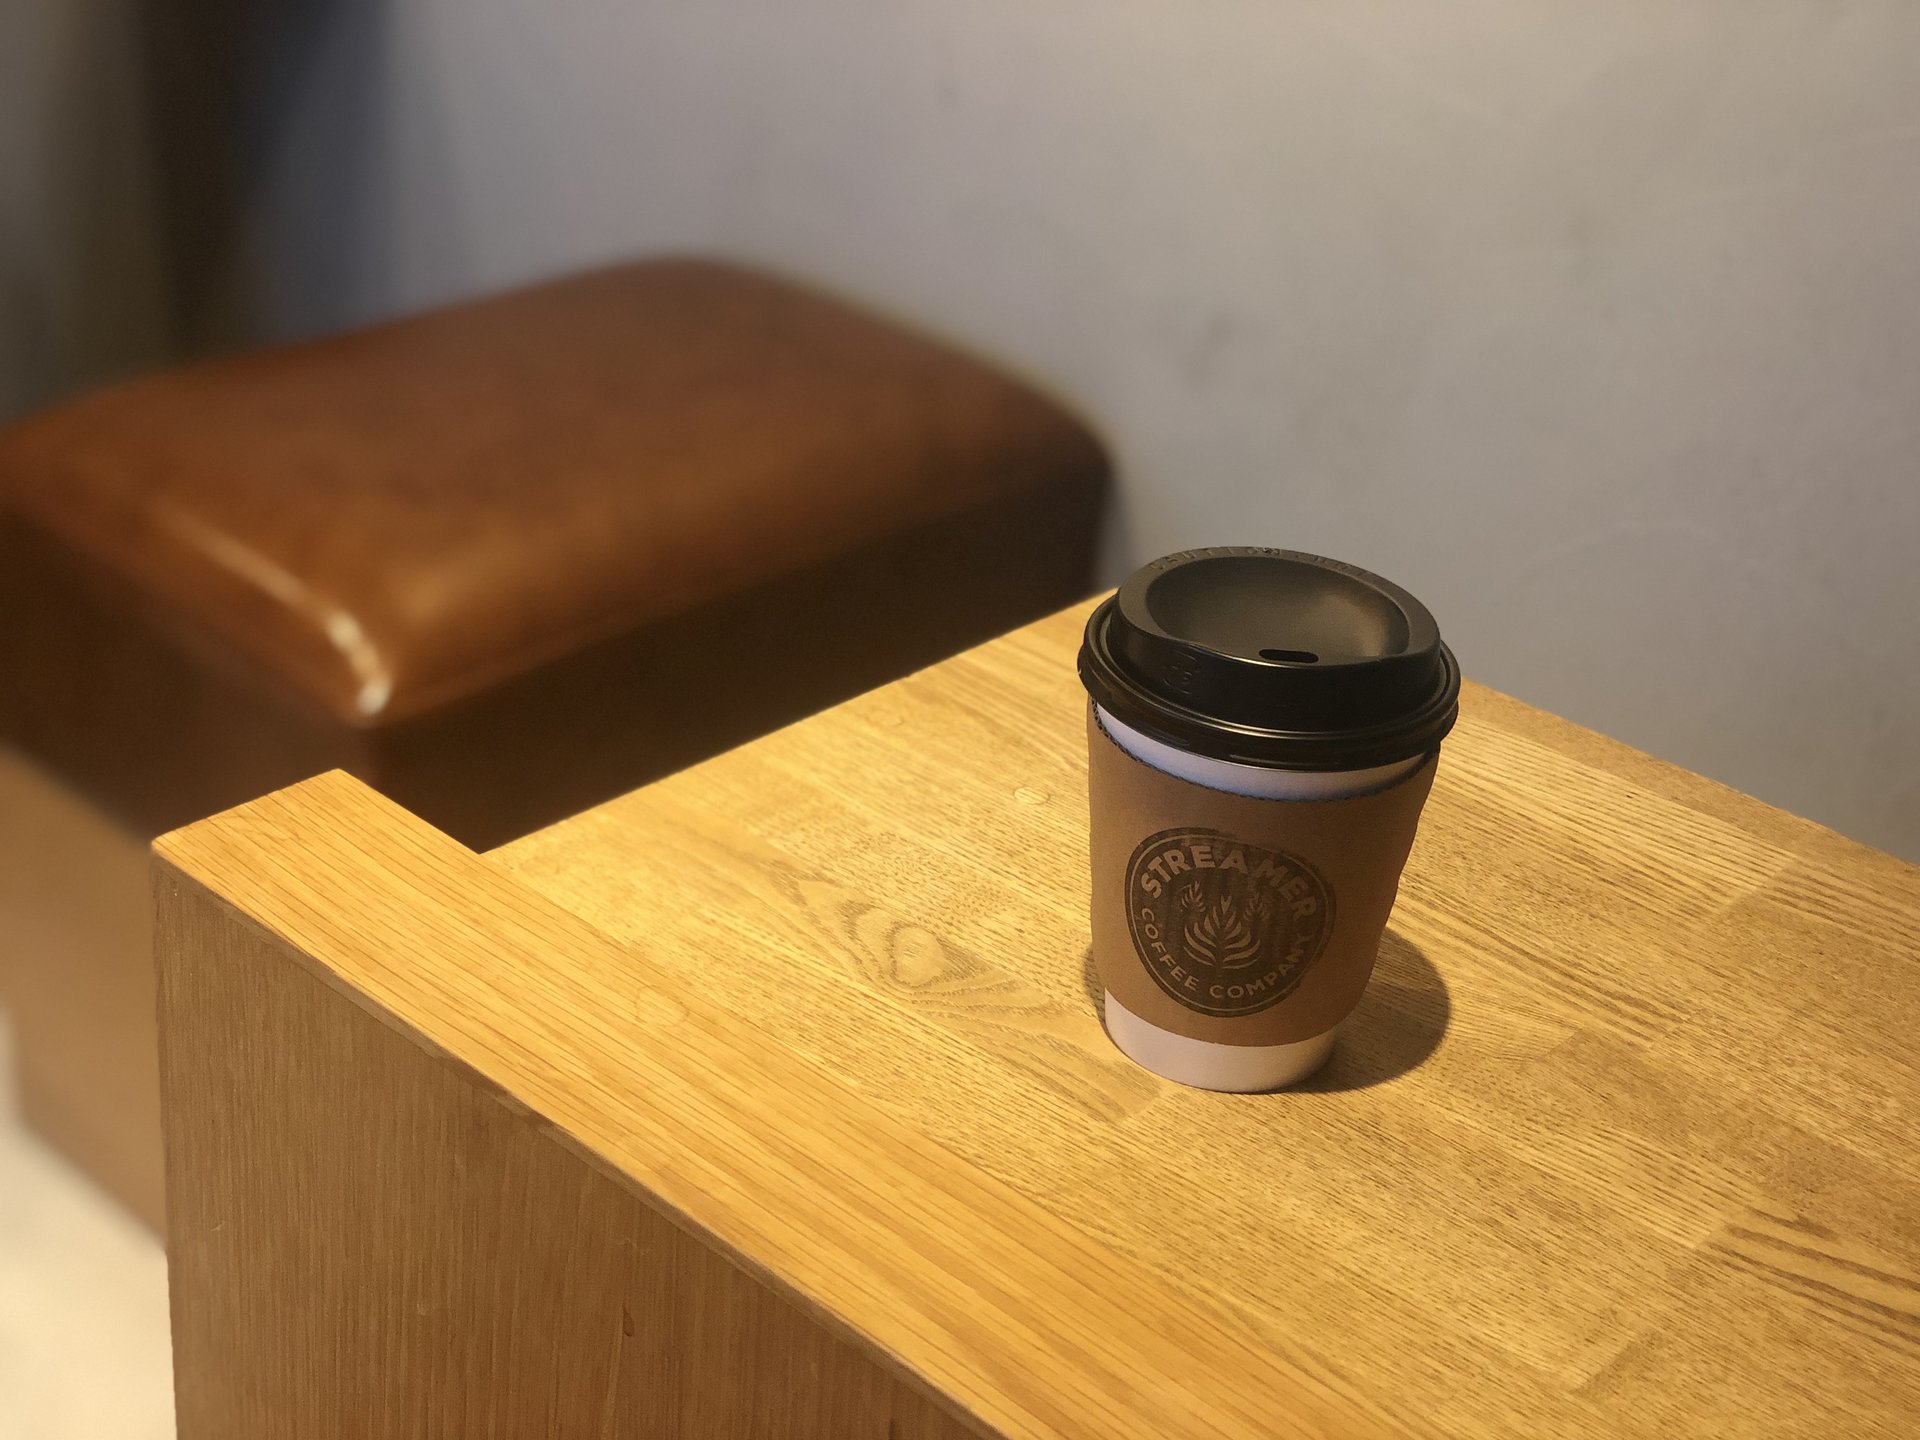 東北沢駅カフェ「STREAMER COFFEE COMPANY」でのんびり過ごす昼下がりを♡